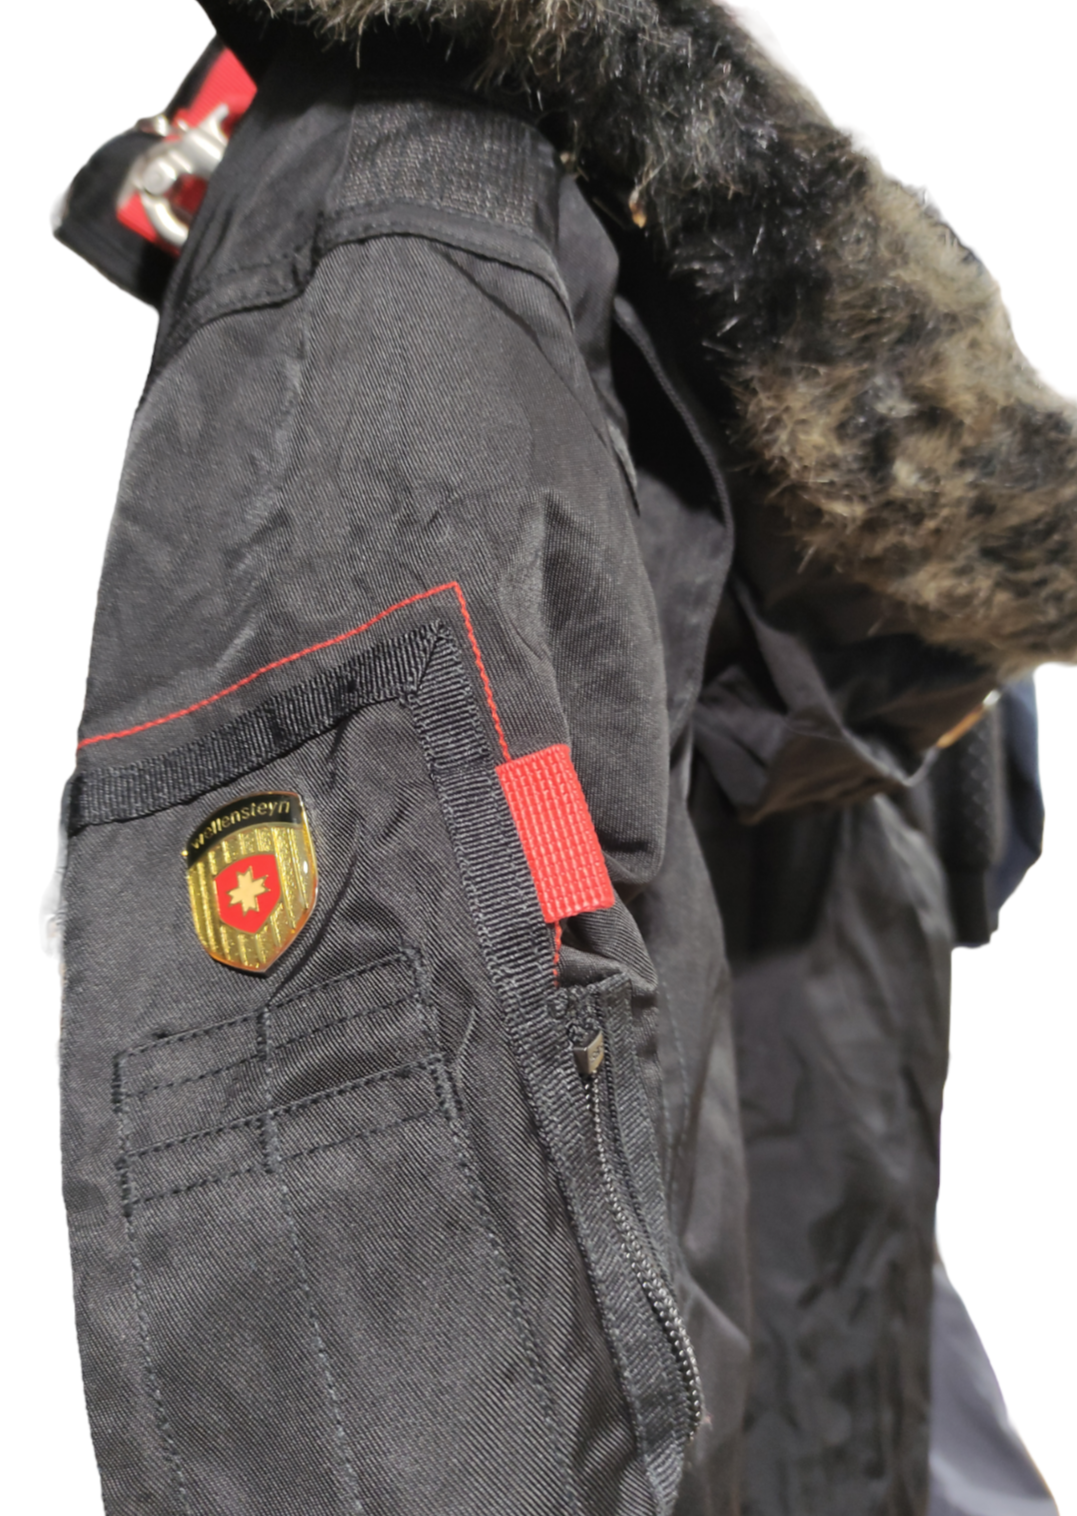 Ενισχυμένο ανδρικό Μπουφάν Ορειβασίας WELLENSTEYN Rescue Team σε Μαύρο χρώμα (Medium)